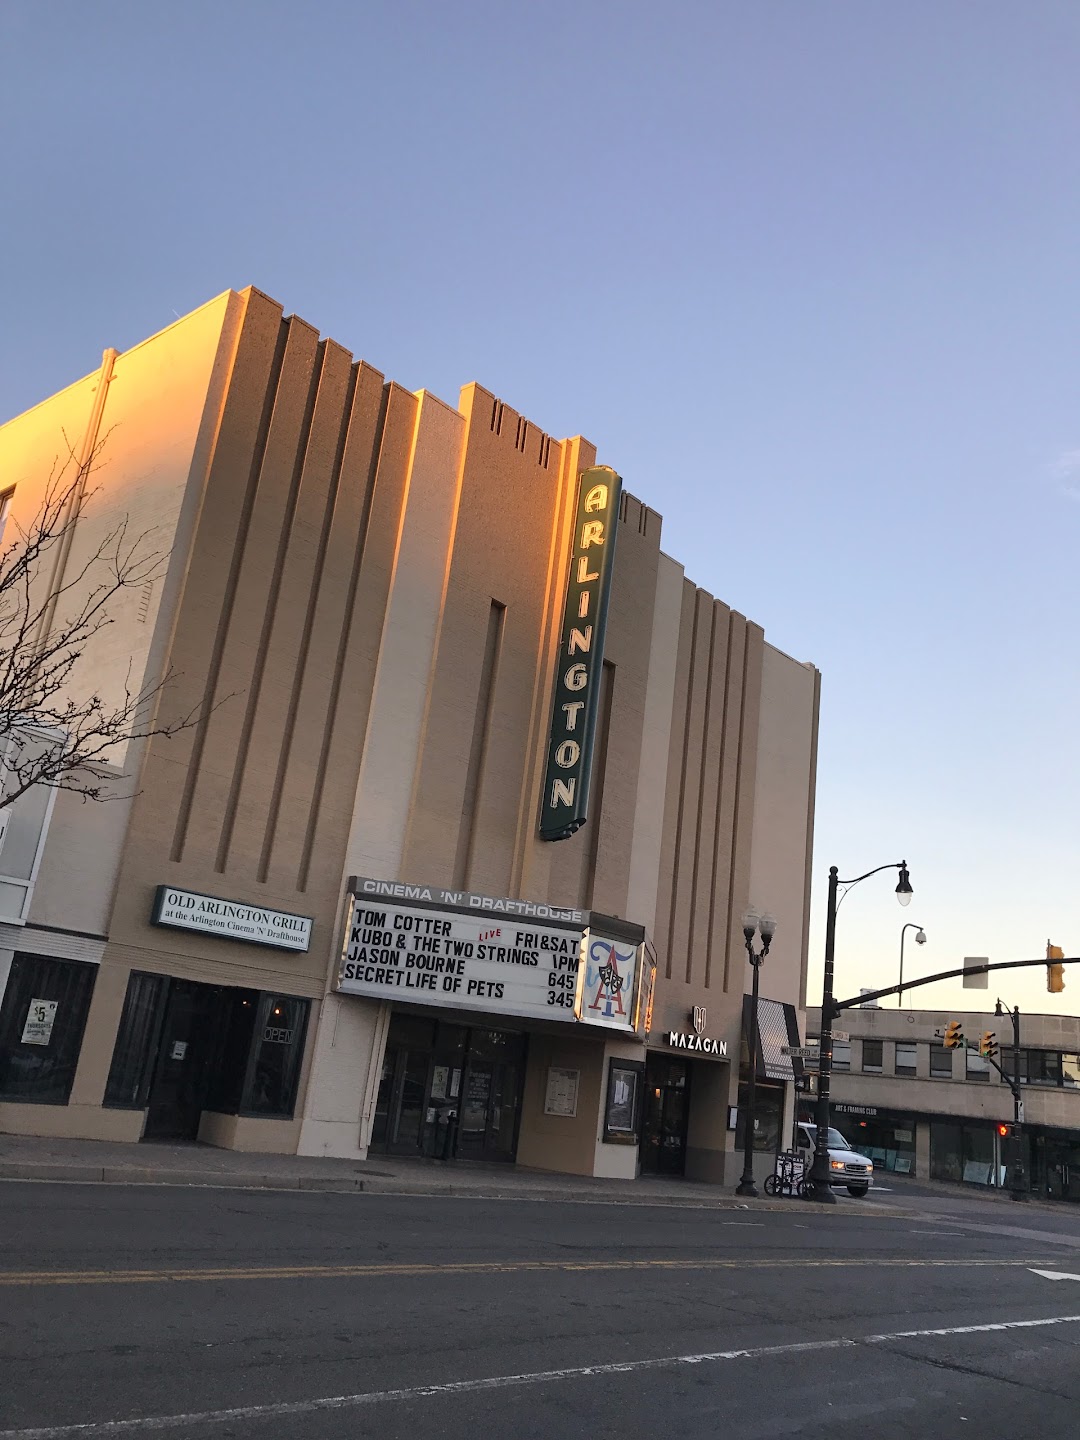 Arlington Cinema and Drafthouse